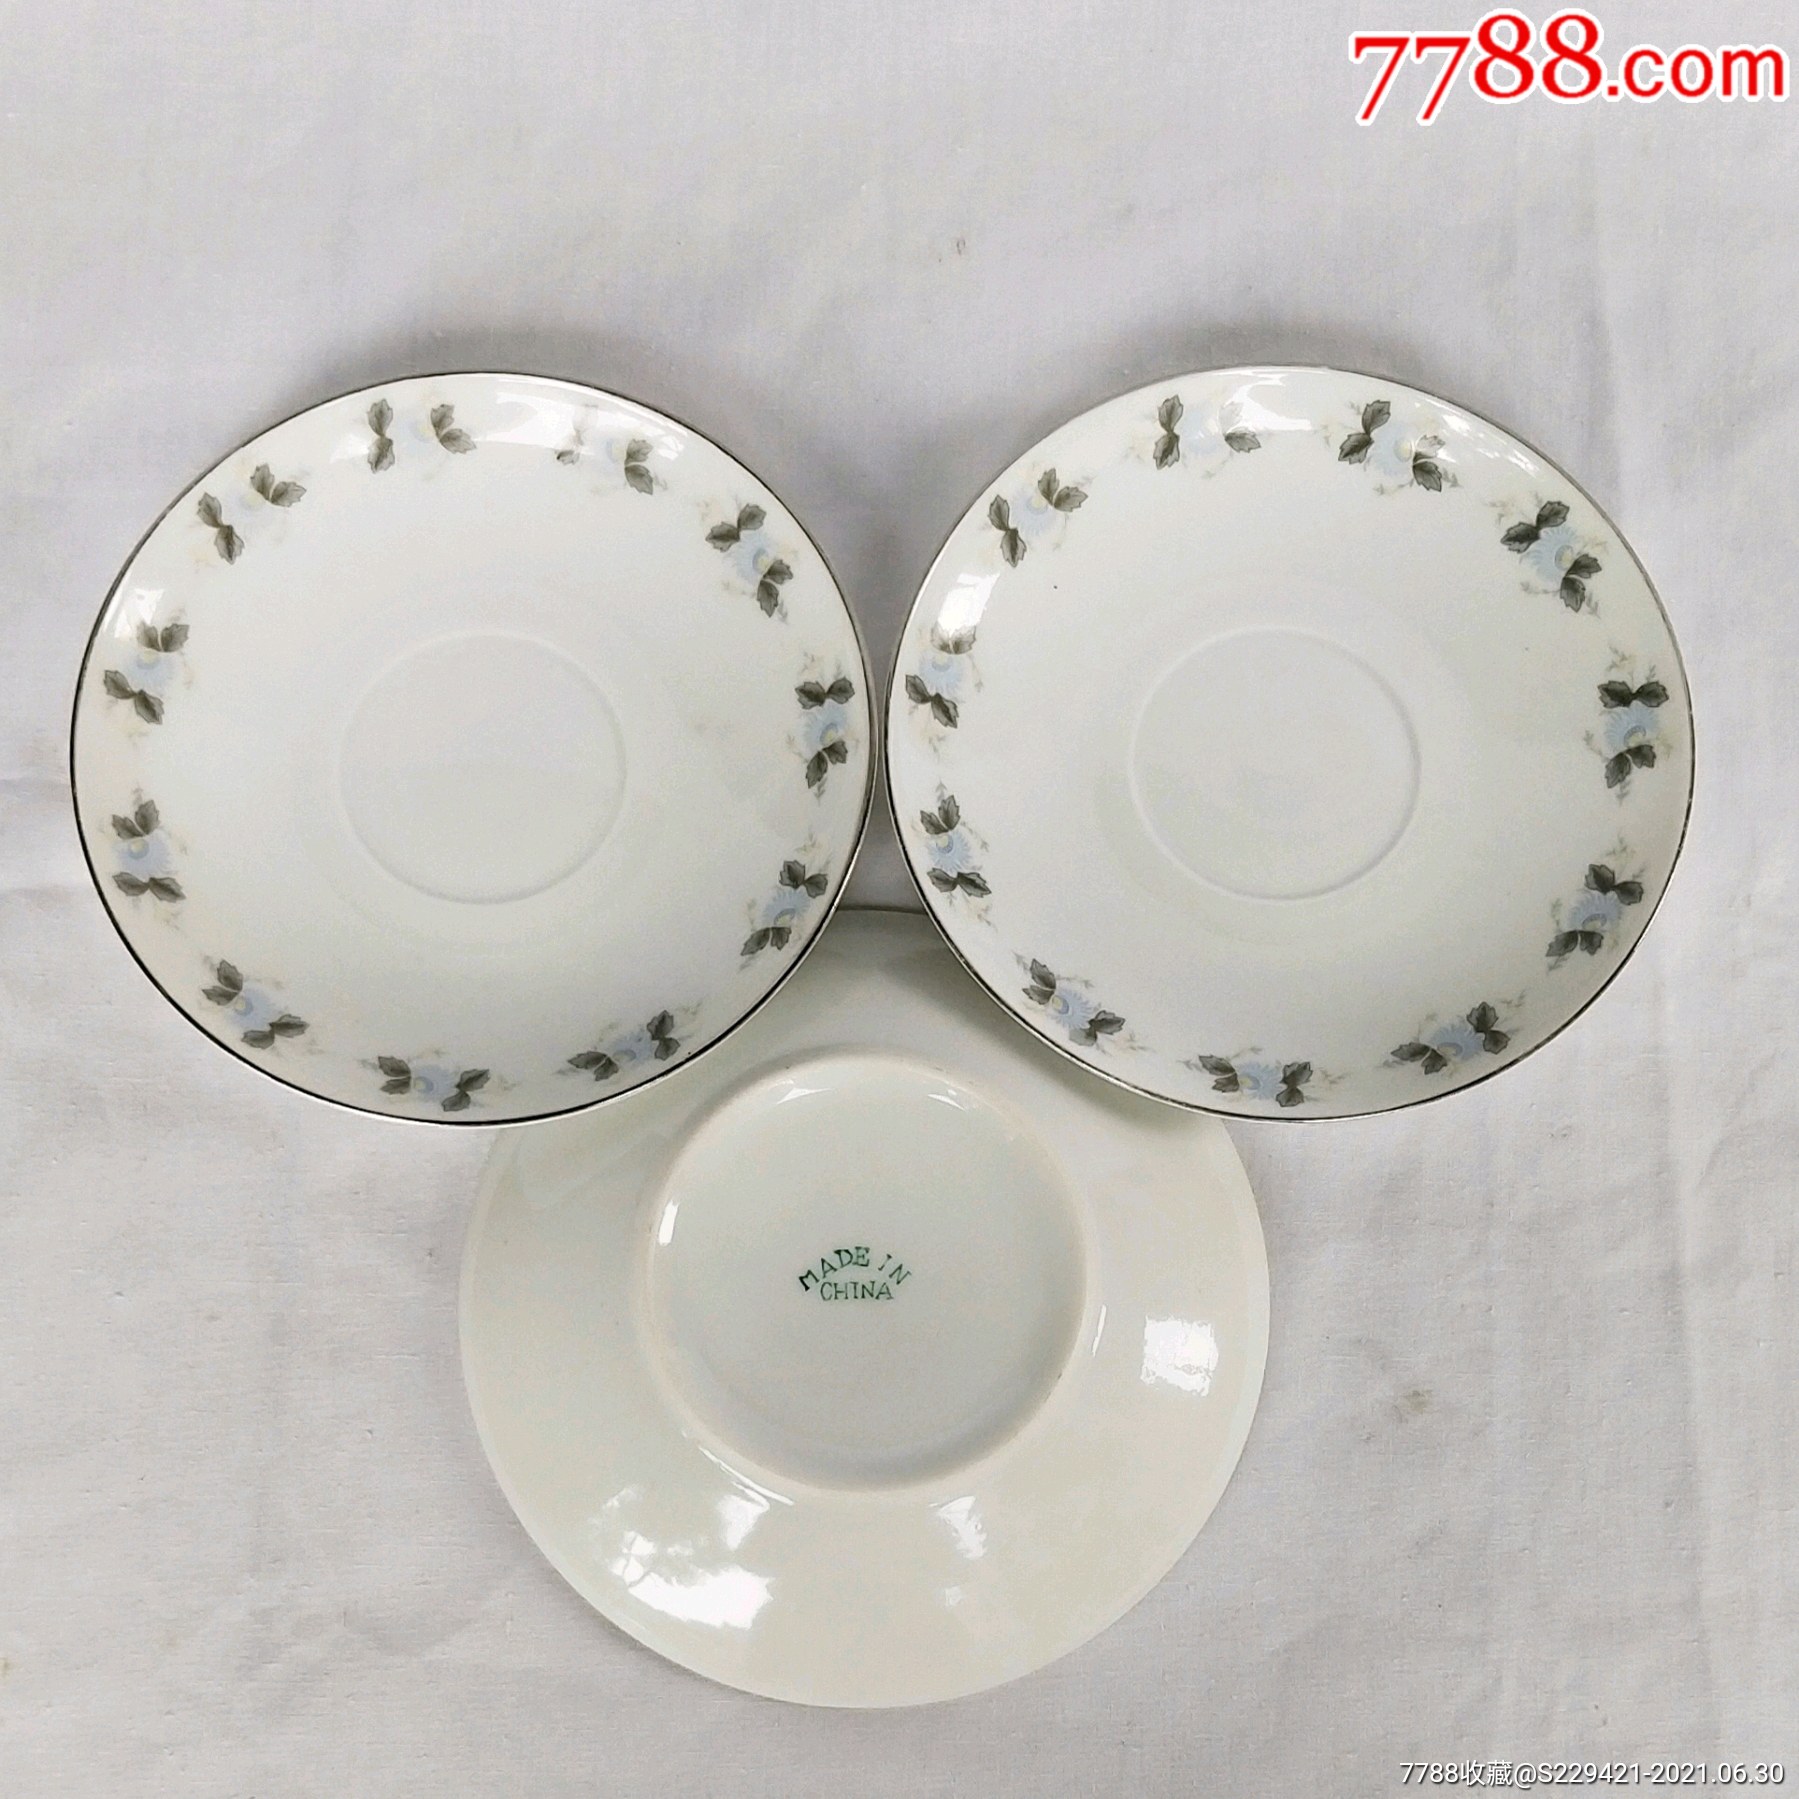 文革醴陵瓷盘中国制造英文款釉下五彩瓷盘含大球泥金边瓷器.